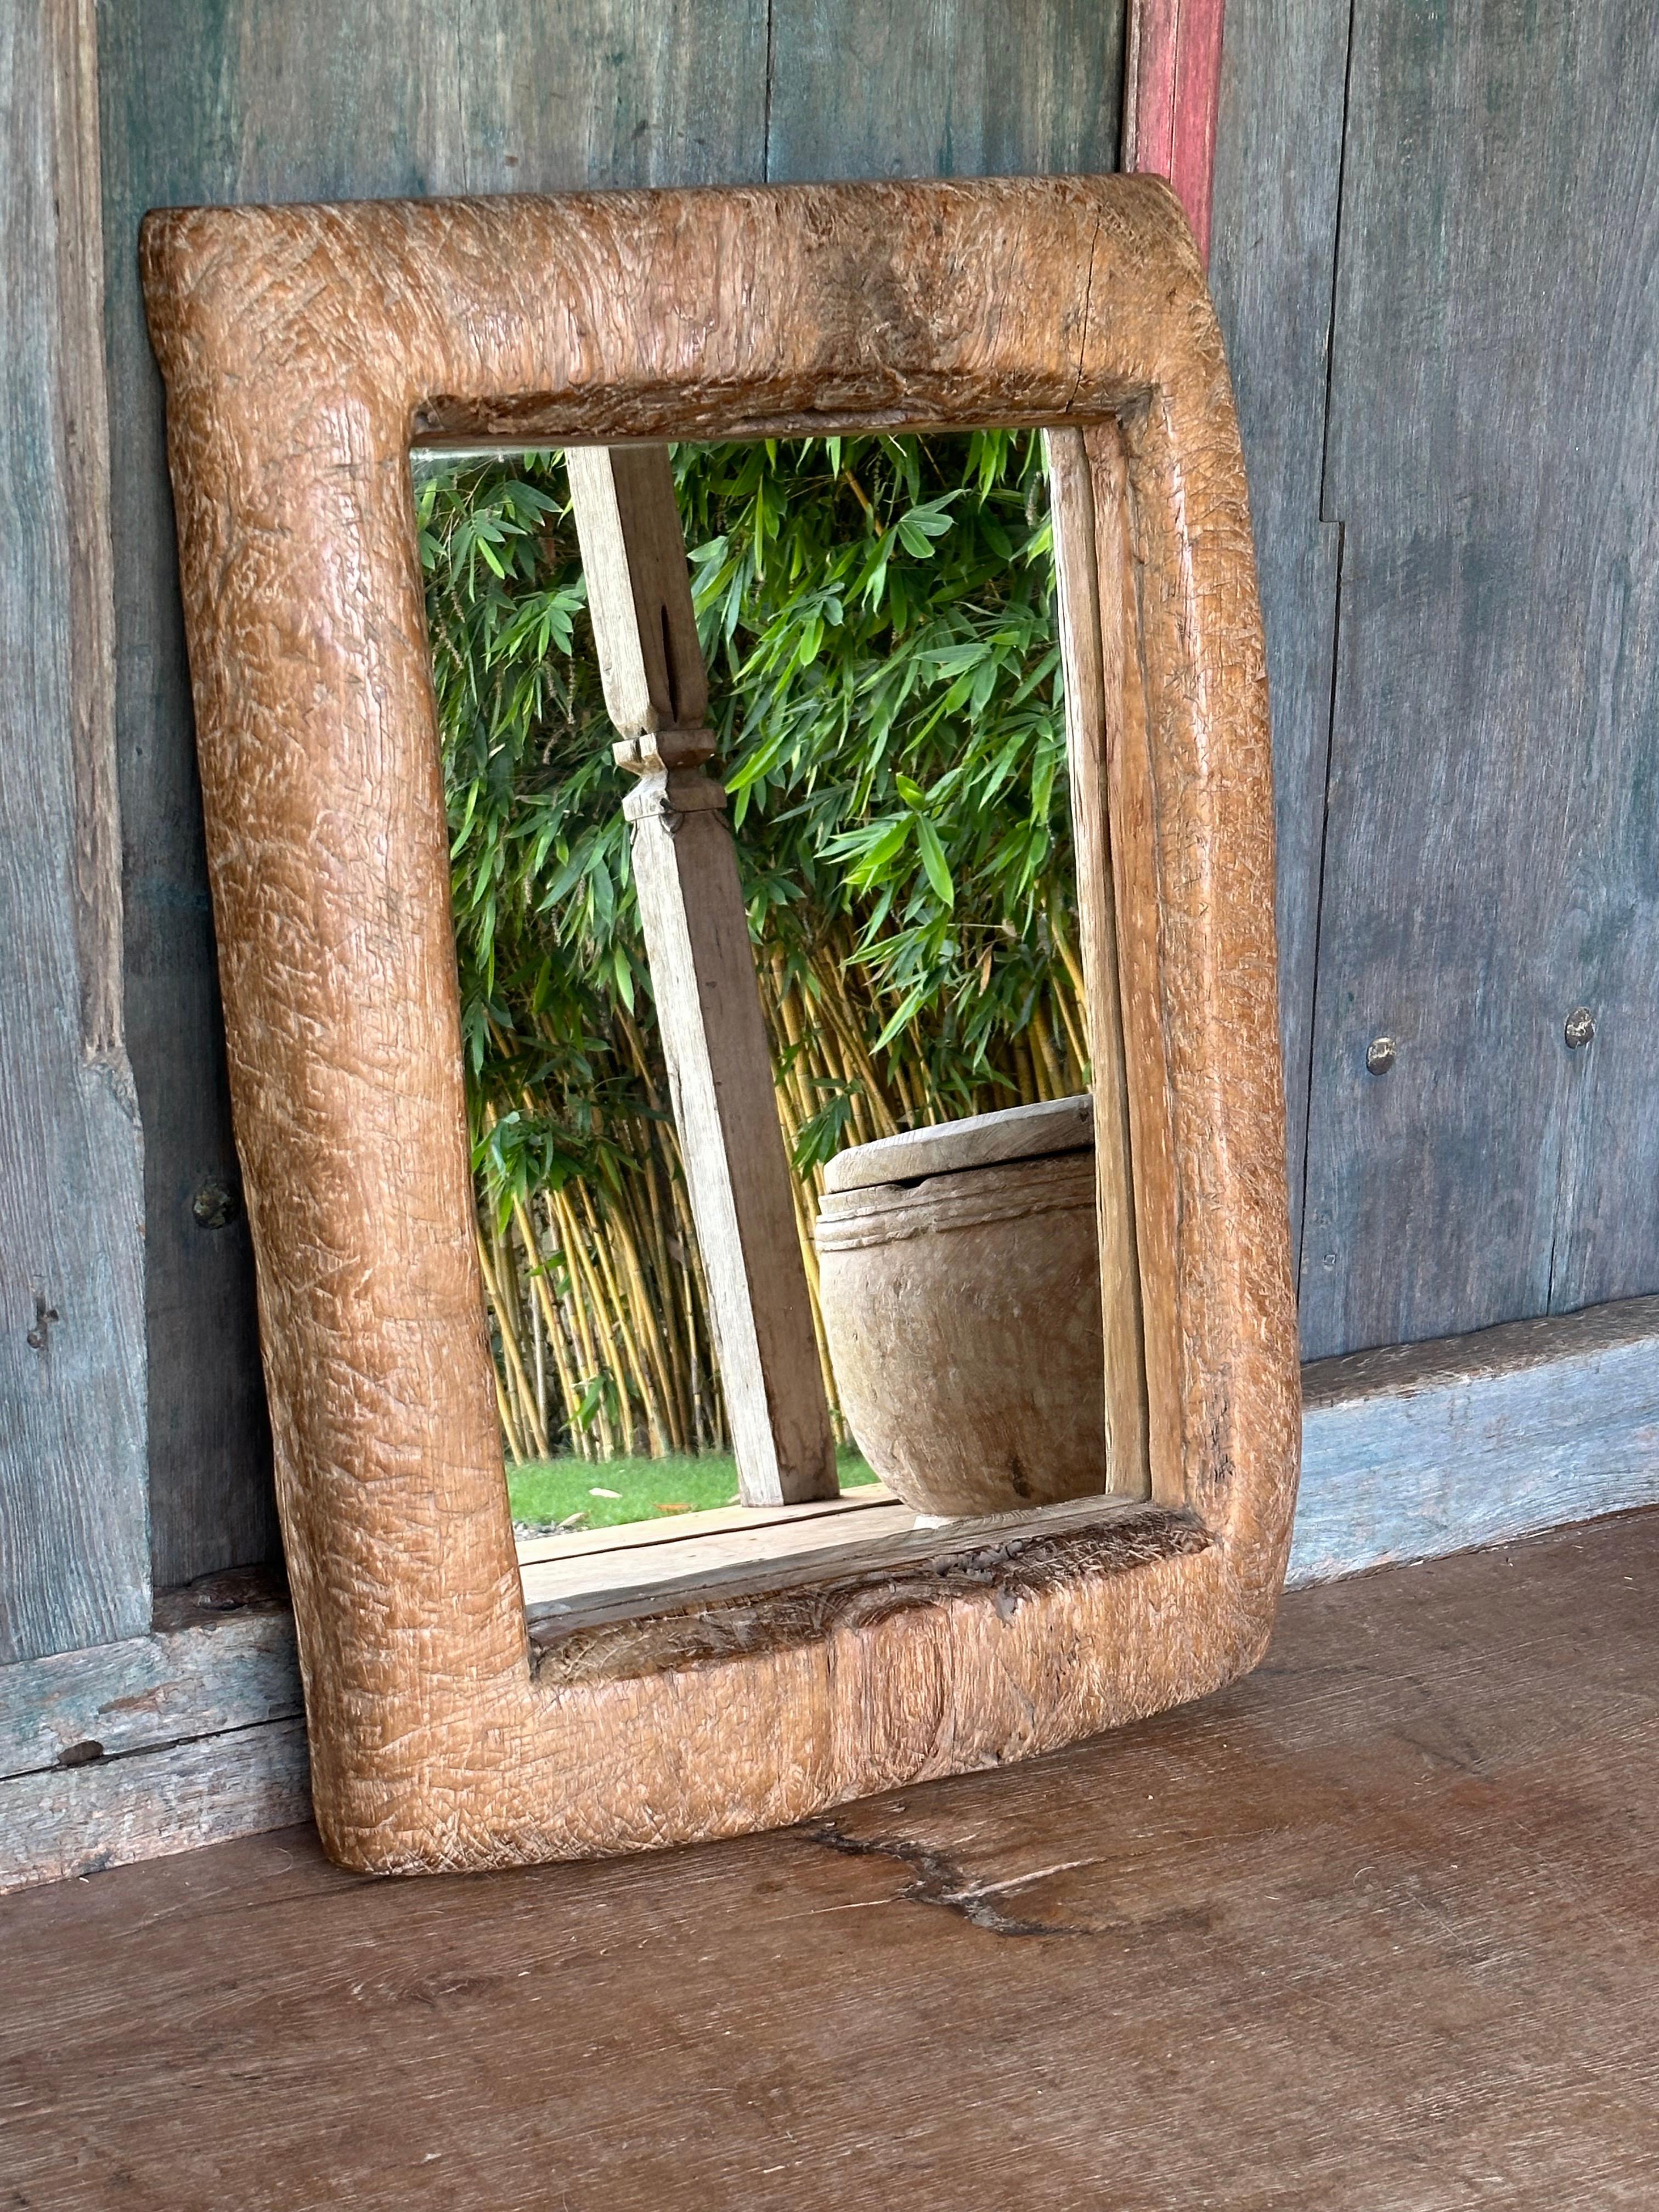 Ein wundervoller, einzigartiger Spiegel, der aus dem Holz einer antiken, massiven Teakholz-Lesung gefertigt wurde. Lesungs sind Reismörser, die auf der Insel Java zum Entfernen von Reishülsen verwendet werden. Das für diesen Spiegel verwendete Holz